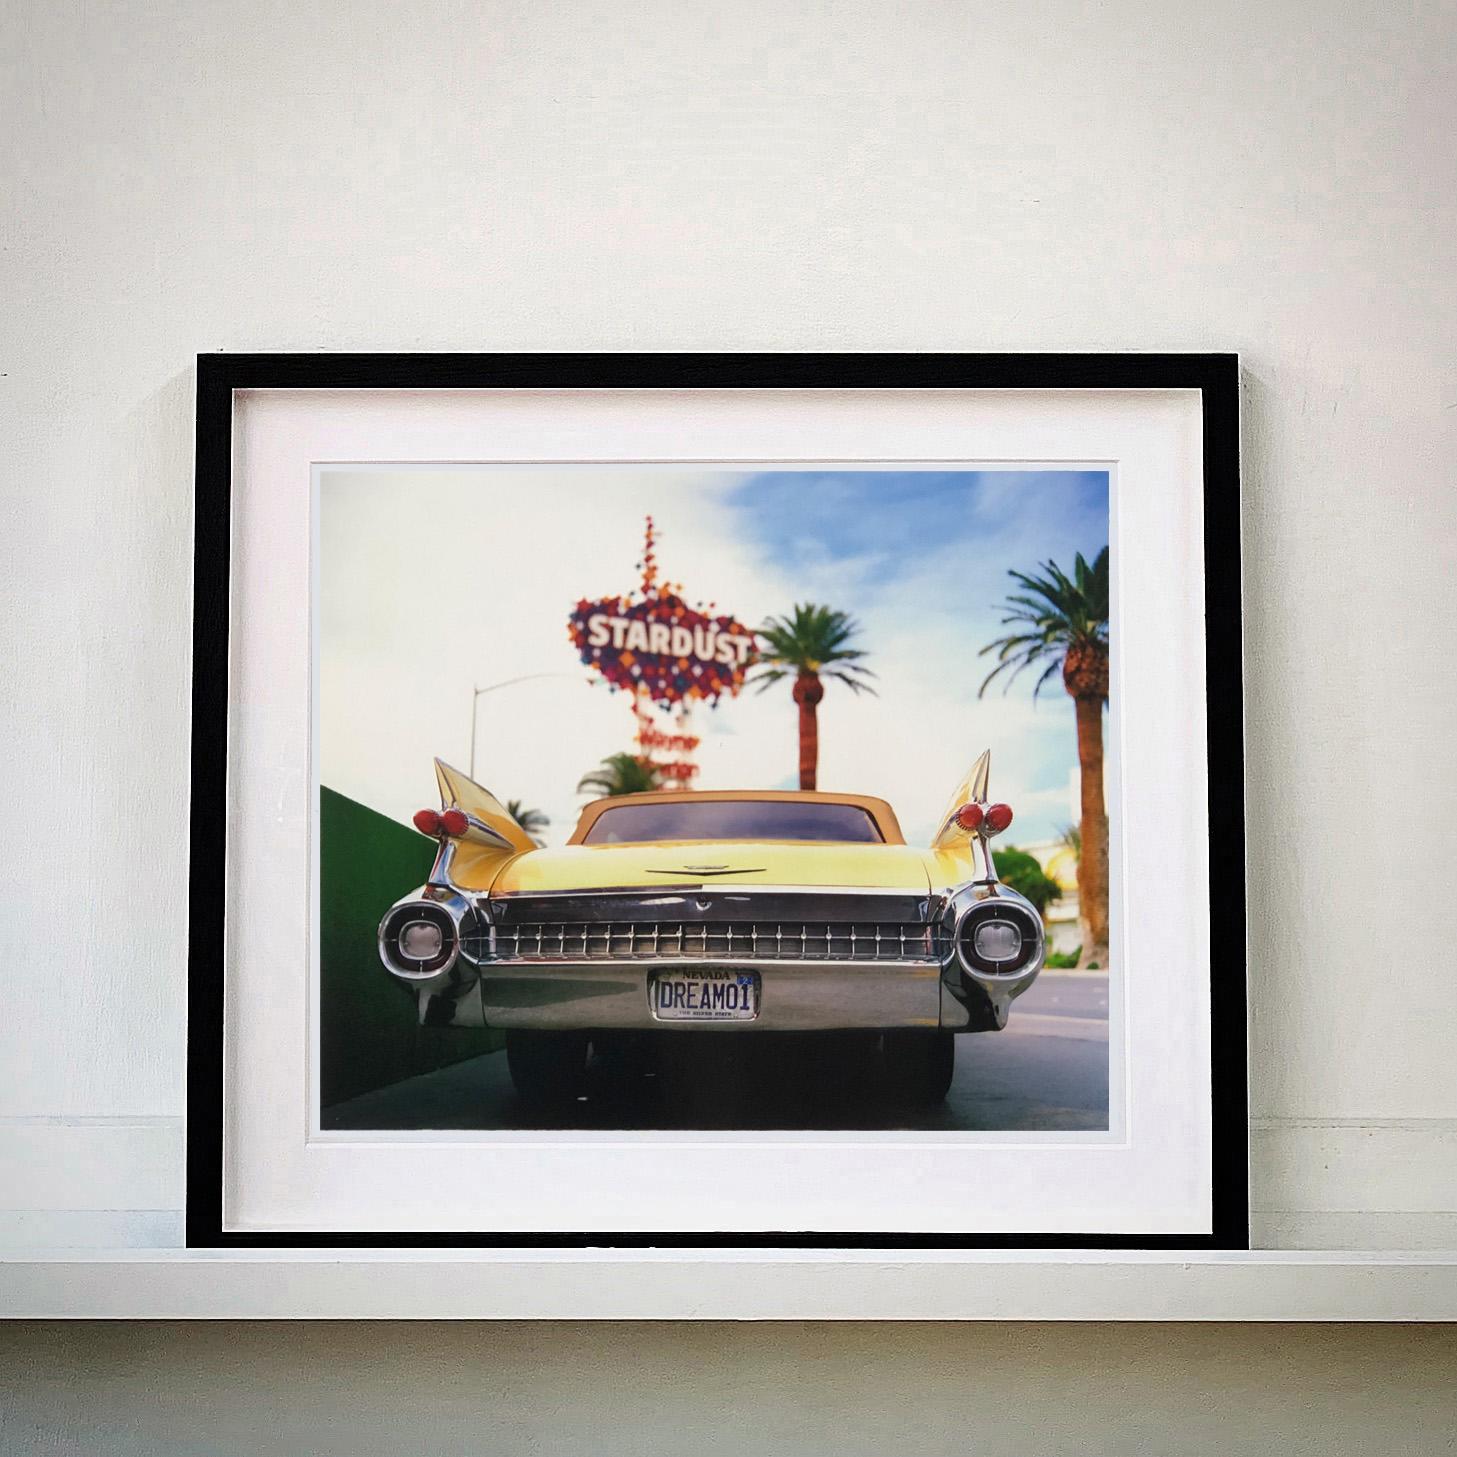 Vintage Las Vegas, ensemble de trois œuvres encadrées de la série Dream in Colour de Richard Heeps. On y voit une Cadillac jaune classique sur le Strip de Las Vegas et des icônes architecturales, l'enseigne Googie Stardust Casino, le restaurant